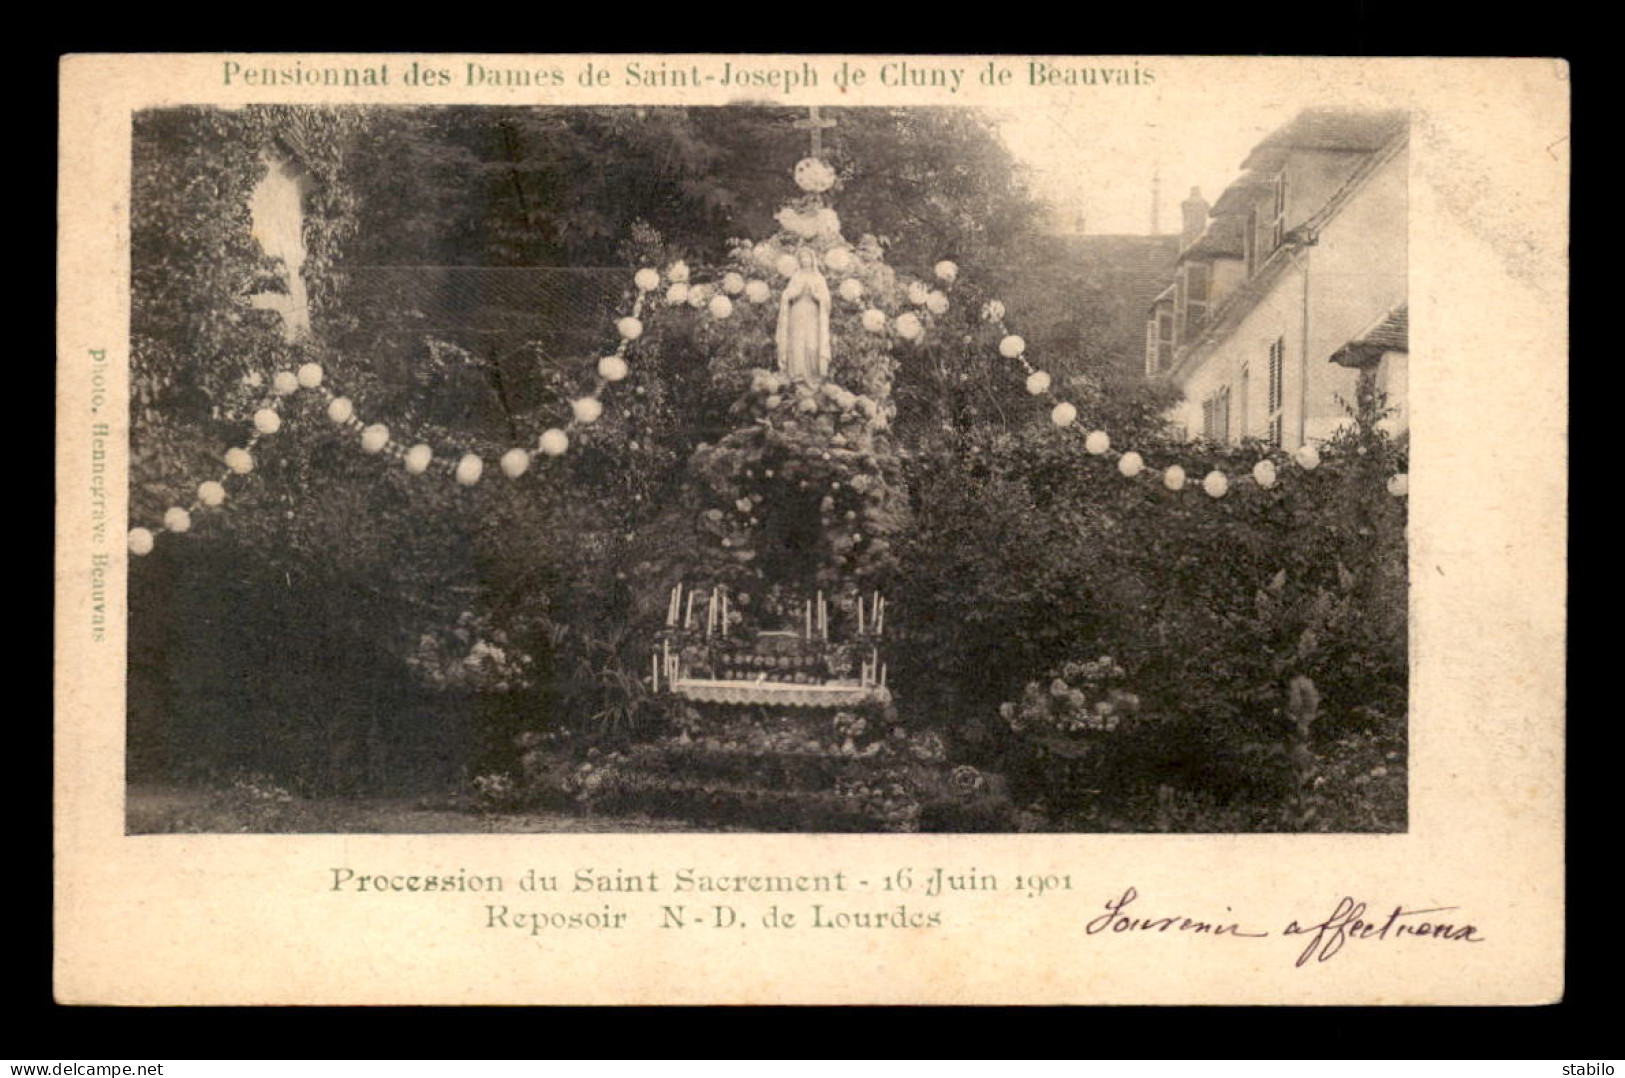 60 - BEAUVAIS - PENSIONNAT DES DAMES DE ST-JOSEPH DE CLUNY - REPOSOIR N-D DE LOURDES 16 JUIN 1901 - Beauvais